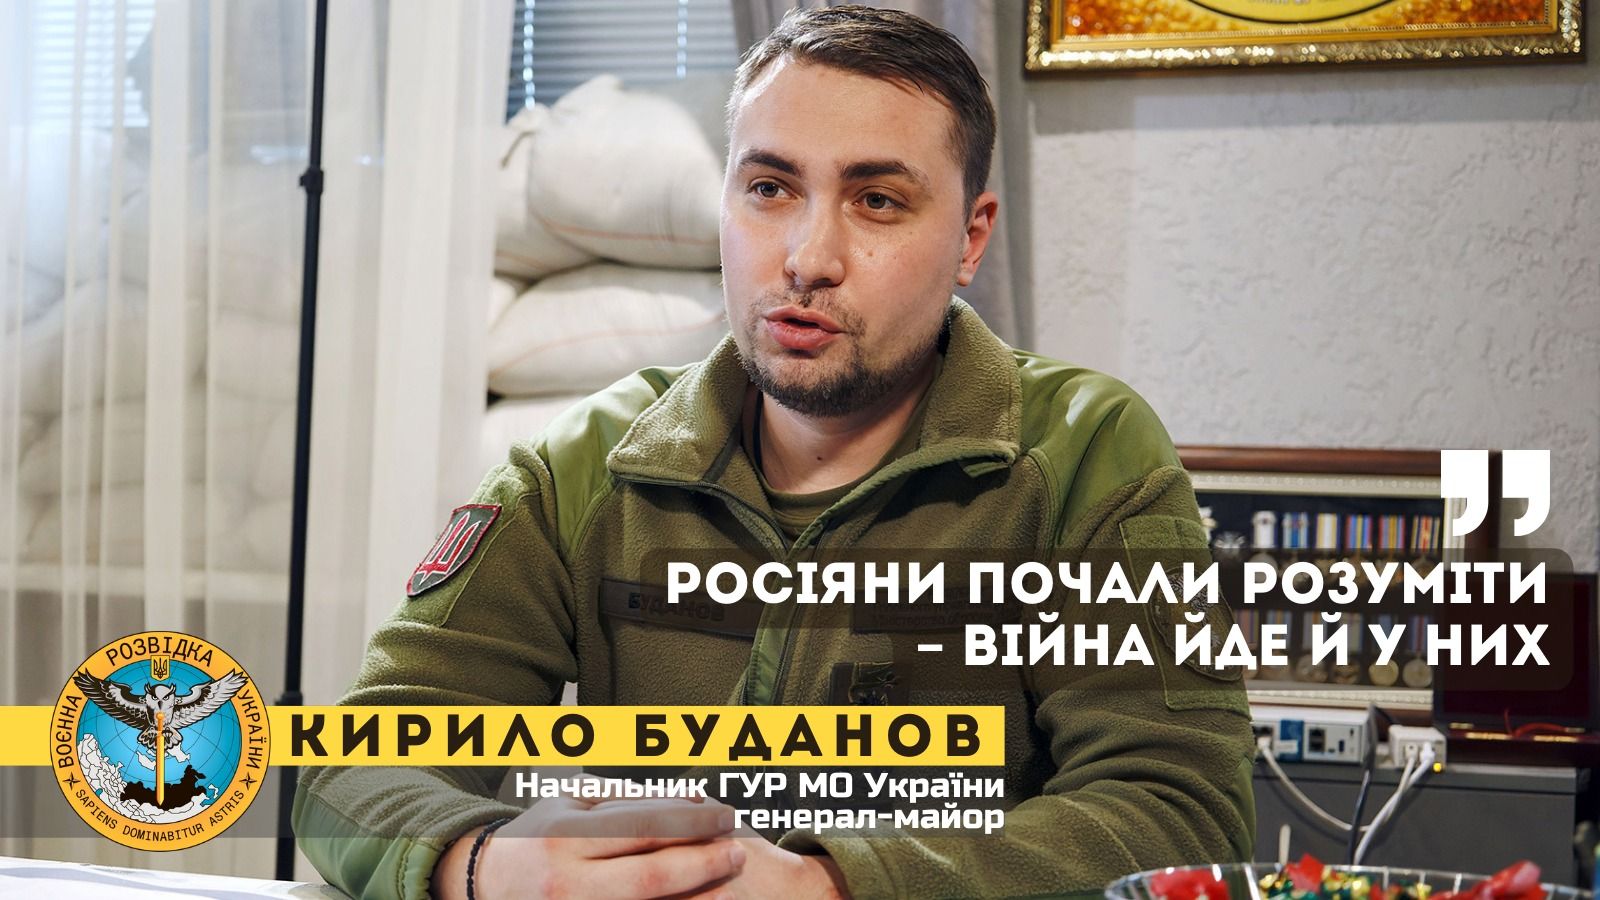 Начальник ГУР Буданов фіксує переломний момент у війні